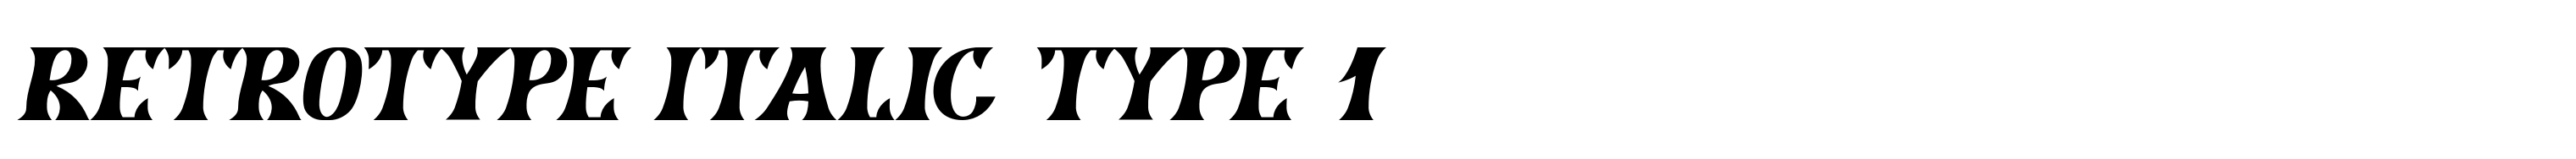 Retrotype Italic Type 1